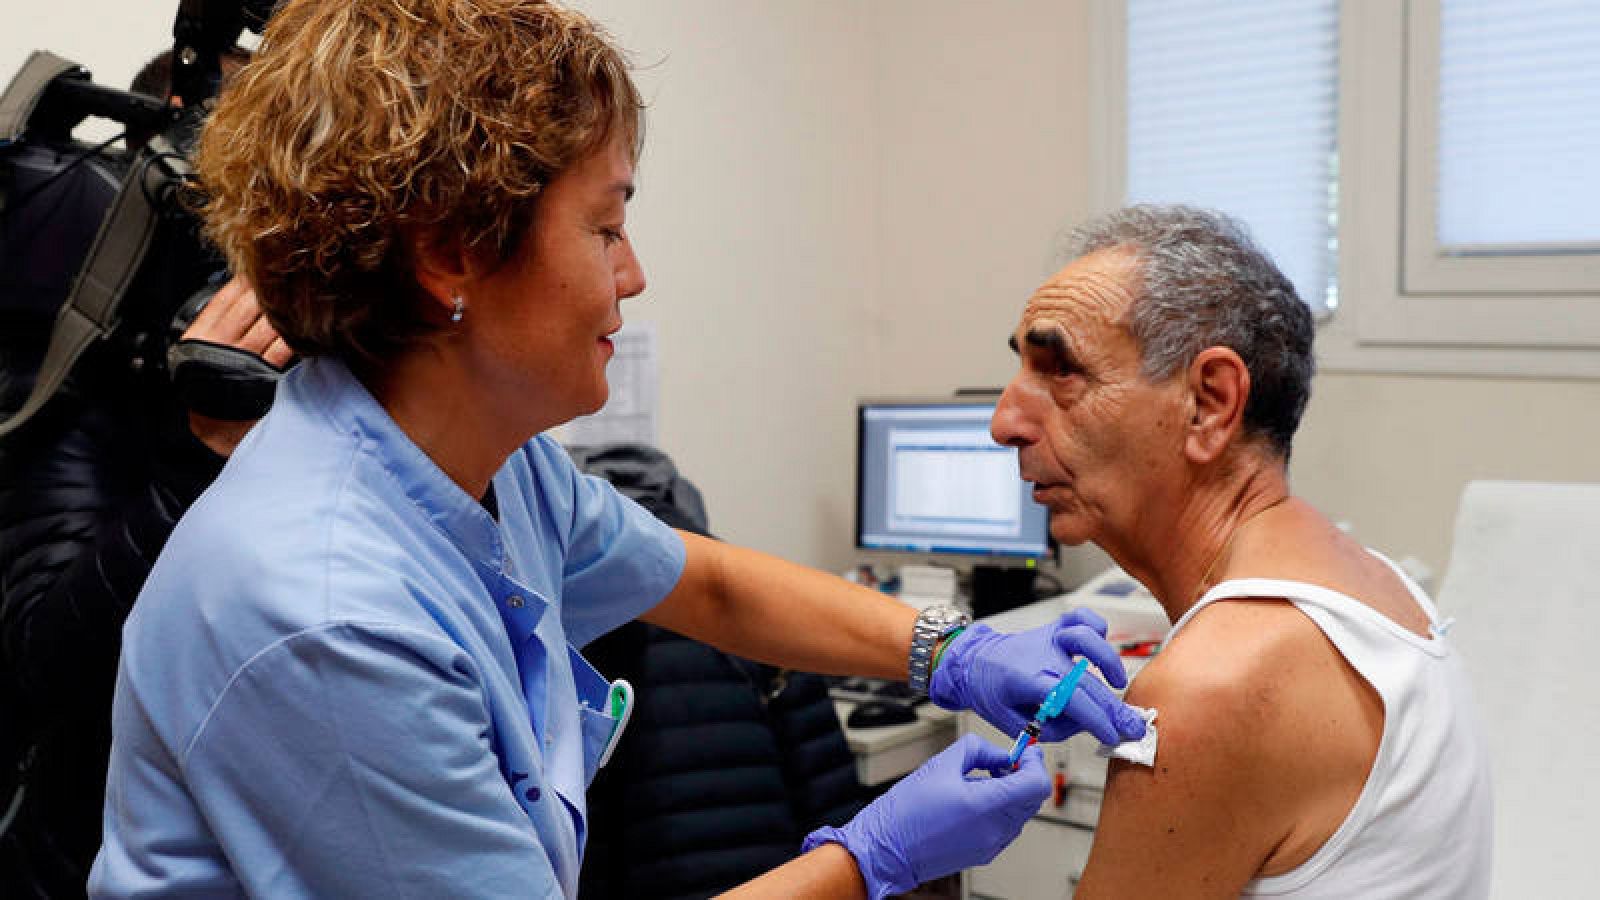  Un hombre, perteneciente a un grupo de riesgo (mayores de 65 años) se vacuna contra la gripe en el mes de septiembre